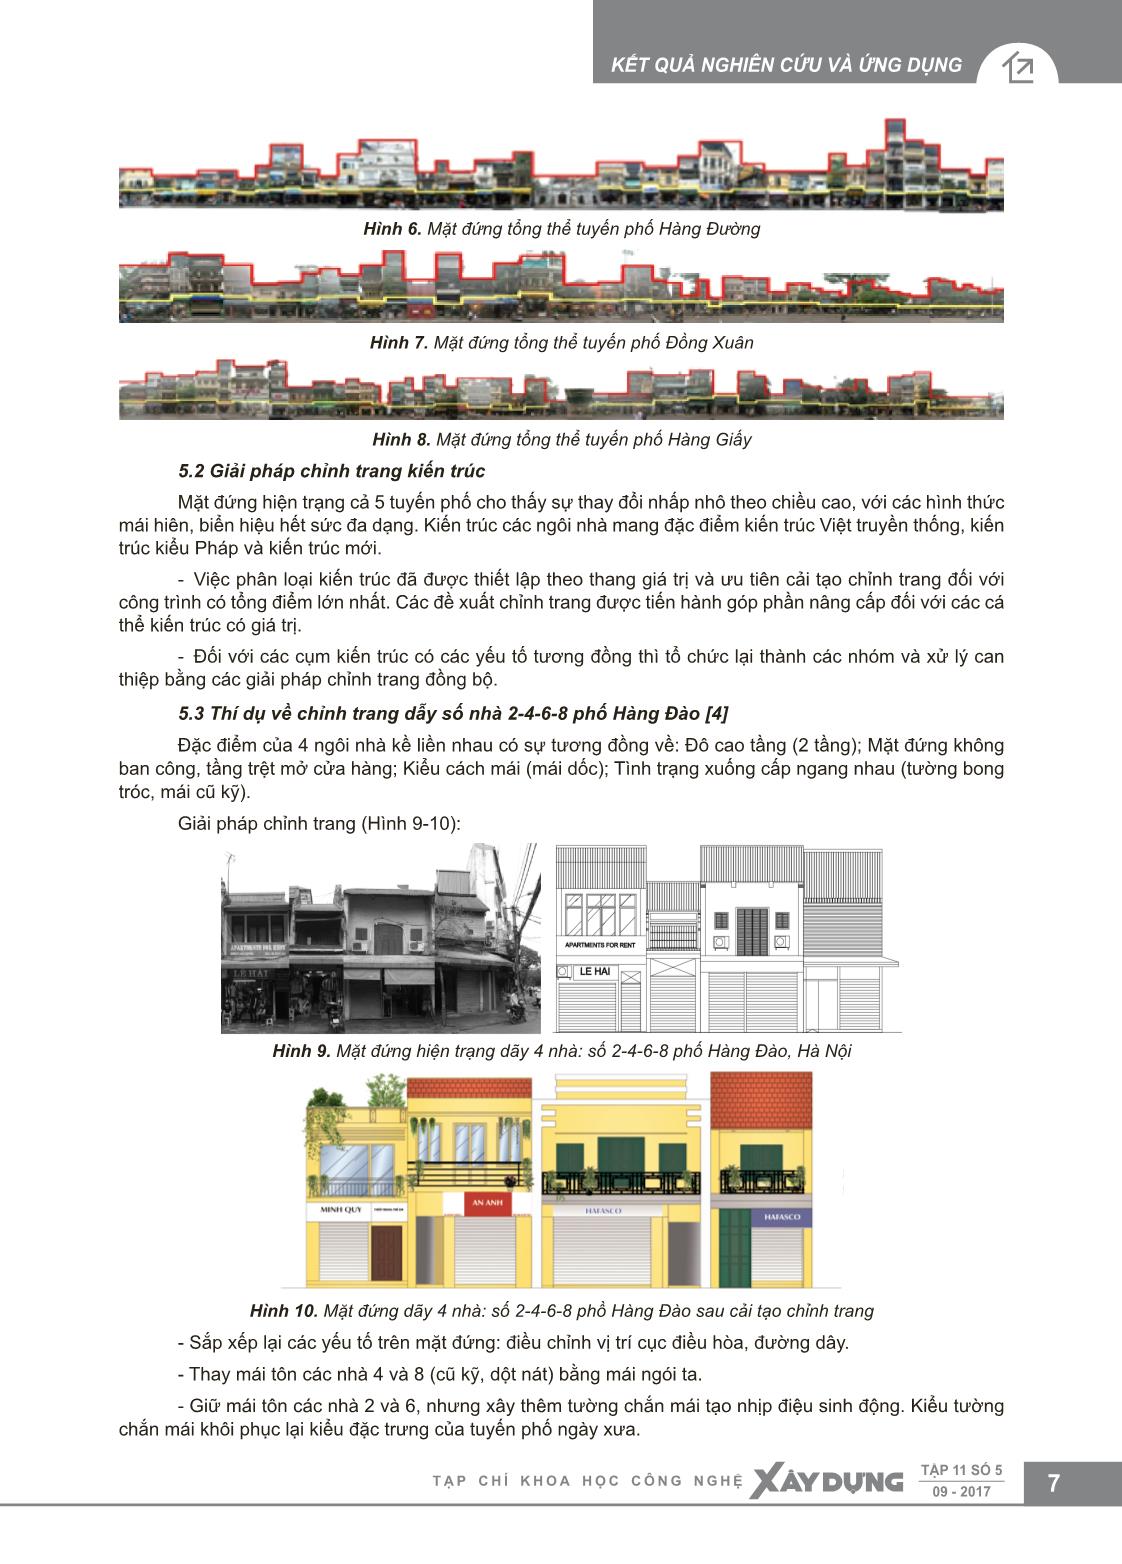 Cải tạo chỉnh trang các tuyến phố trung tâm Hà Nội trang 5